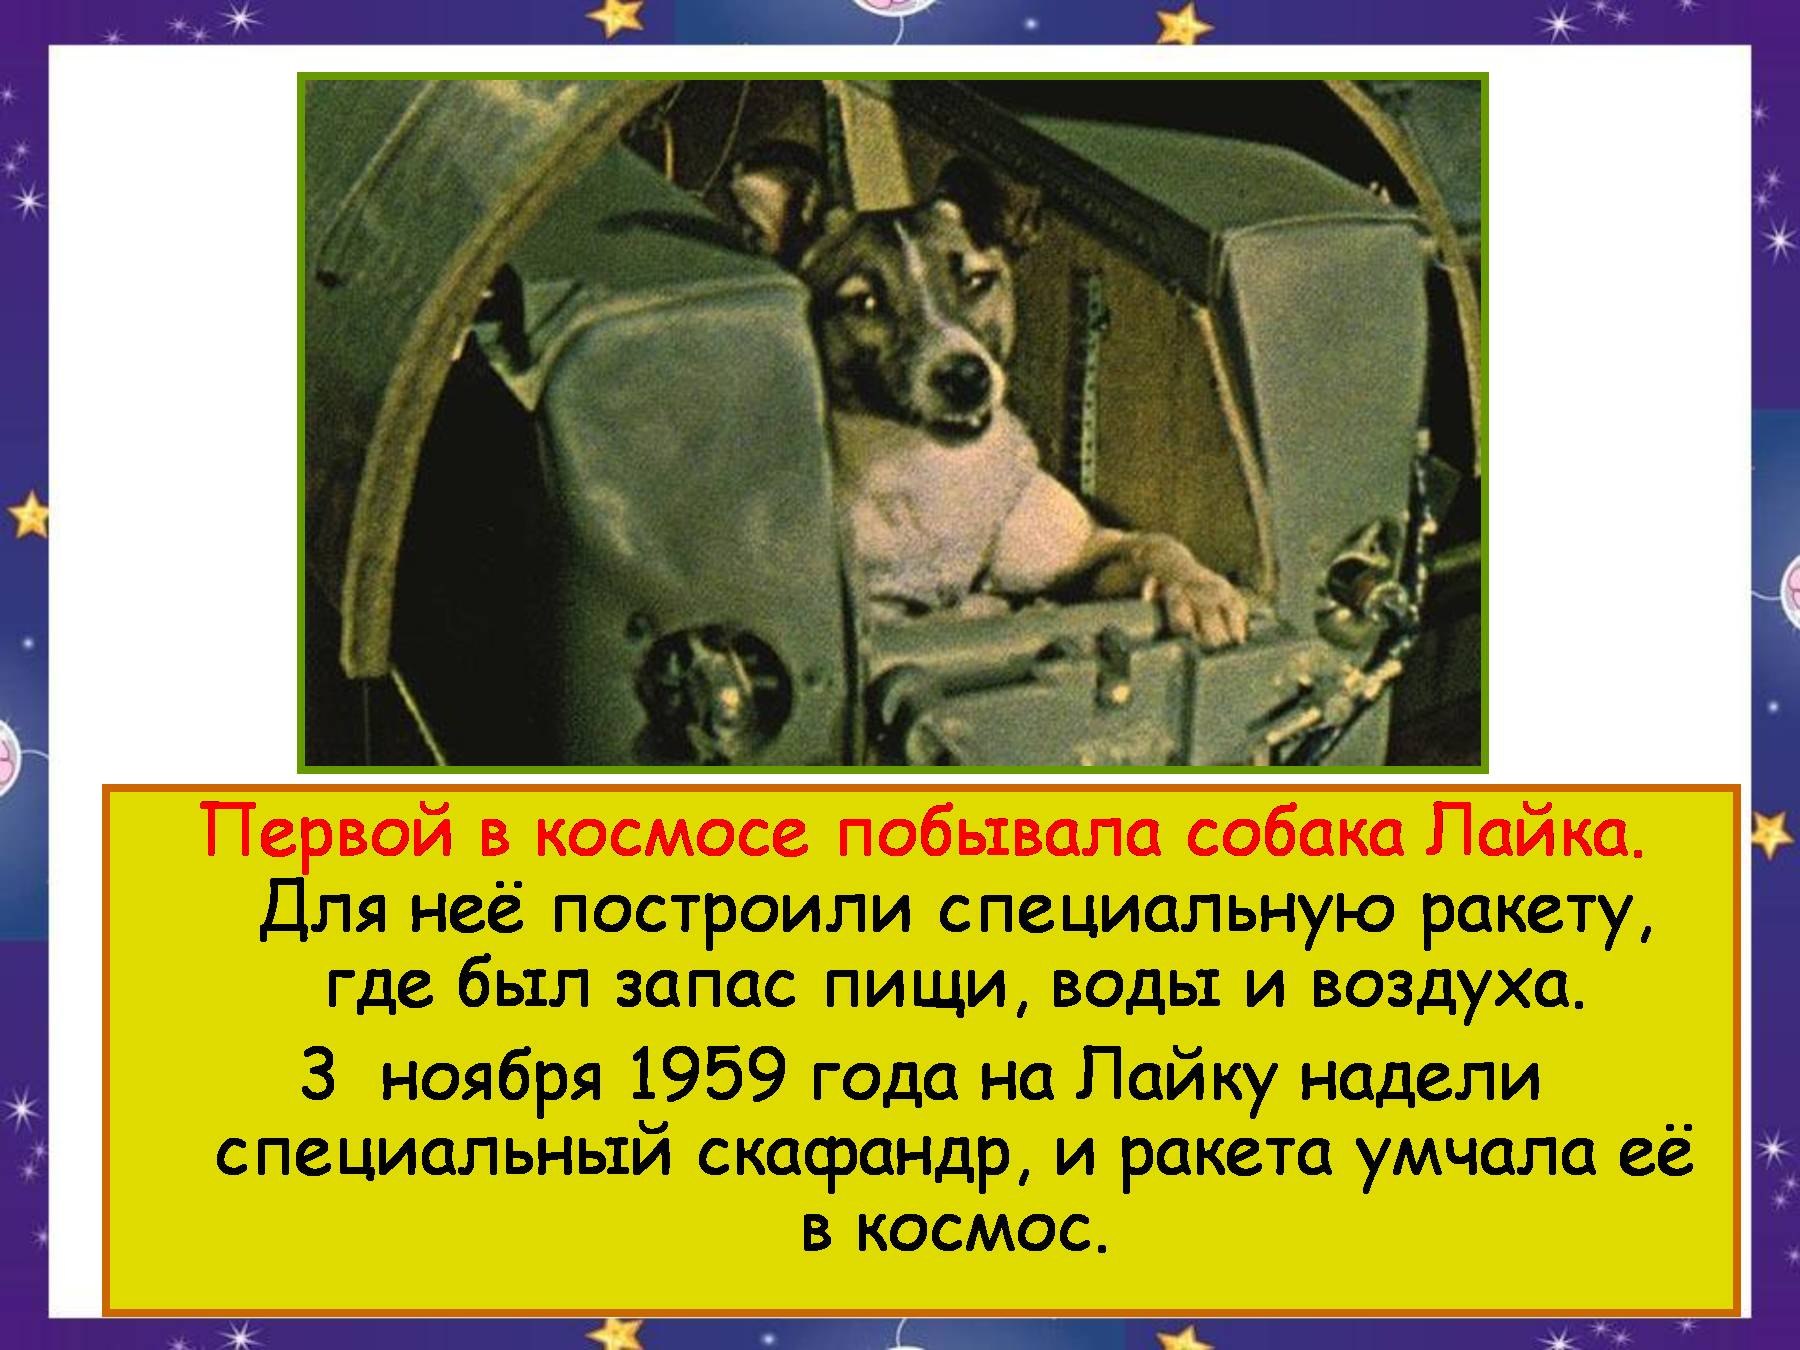 Год первого полета в космос собак. Собаки в космосе презентация. Собака первая побывавшая в космосе. Собака лайка побывавшая в космосе. Первые собаки в космосе.